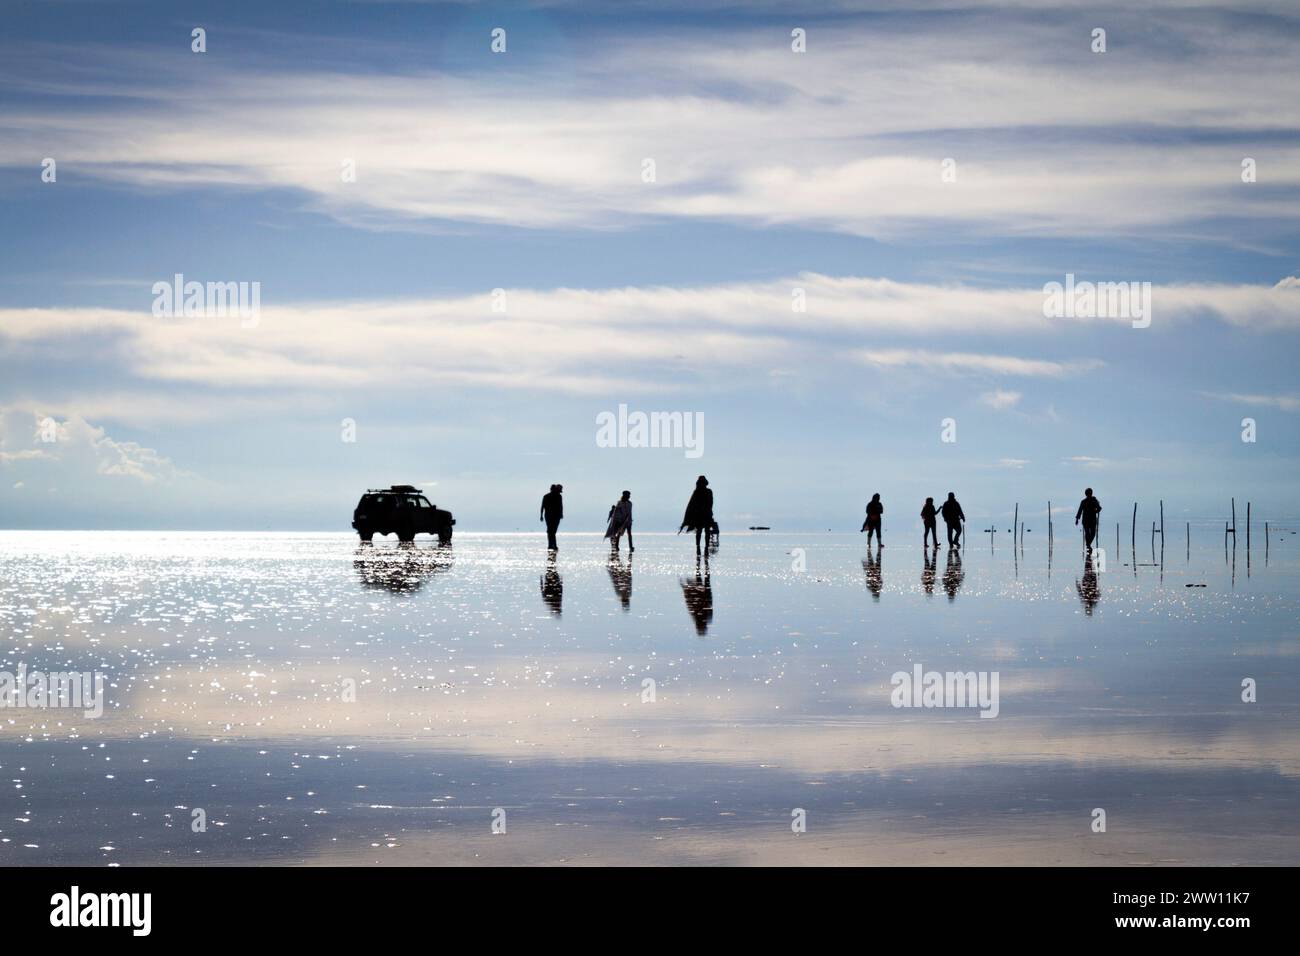 Silueta de turistas en salar de Uyuni, efecto reflejo Stock Photo